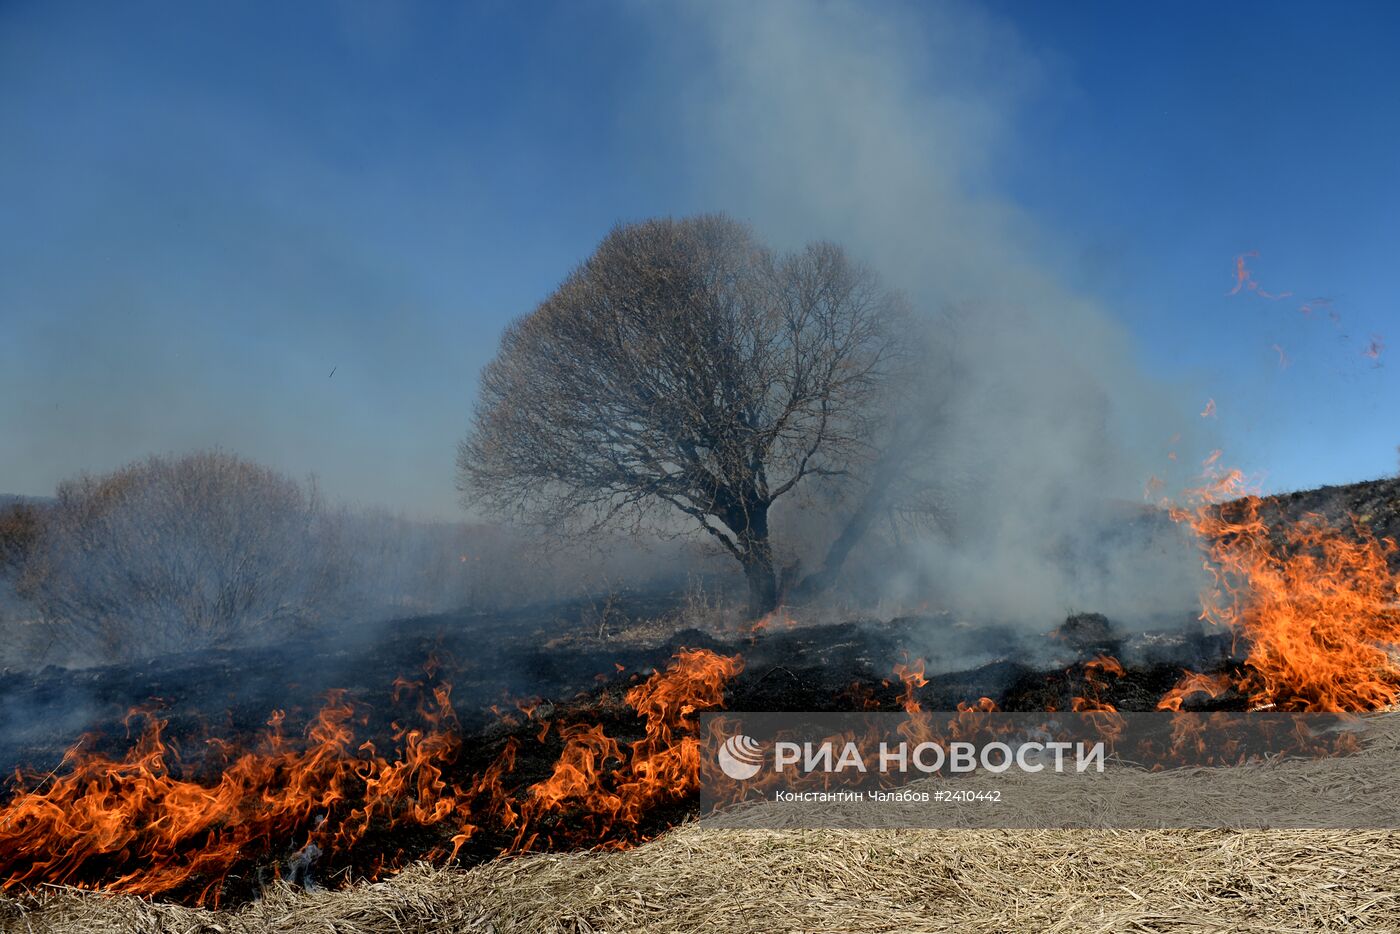 Сжигание сухой травы в Новгородской области